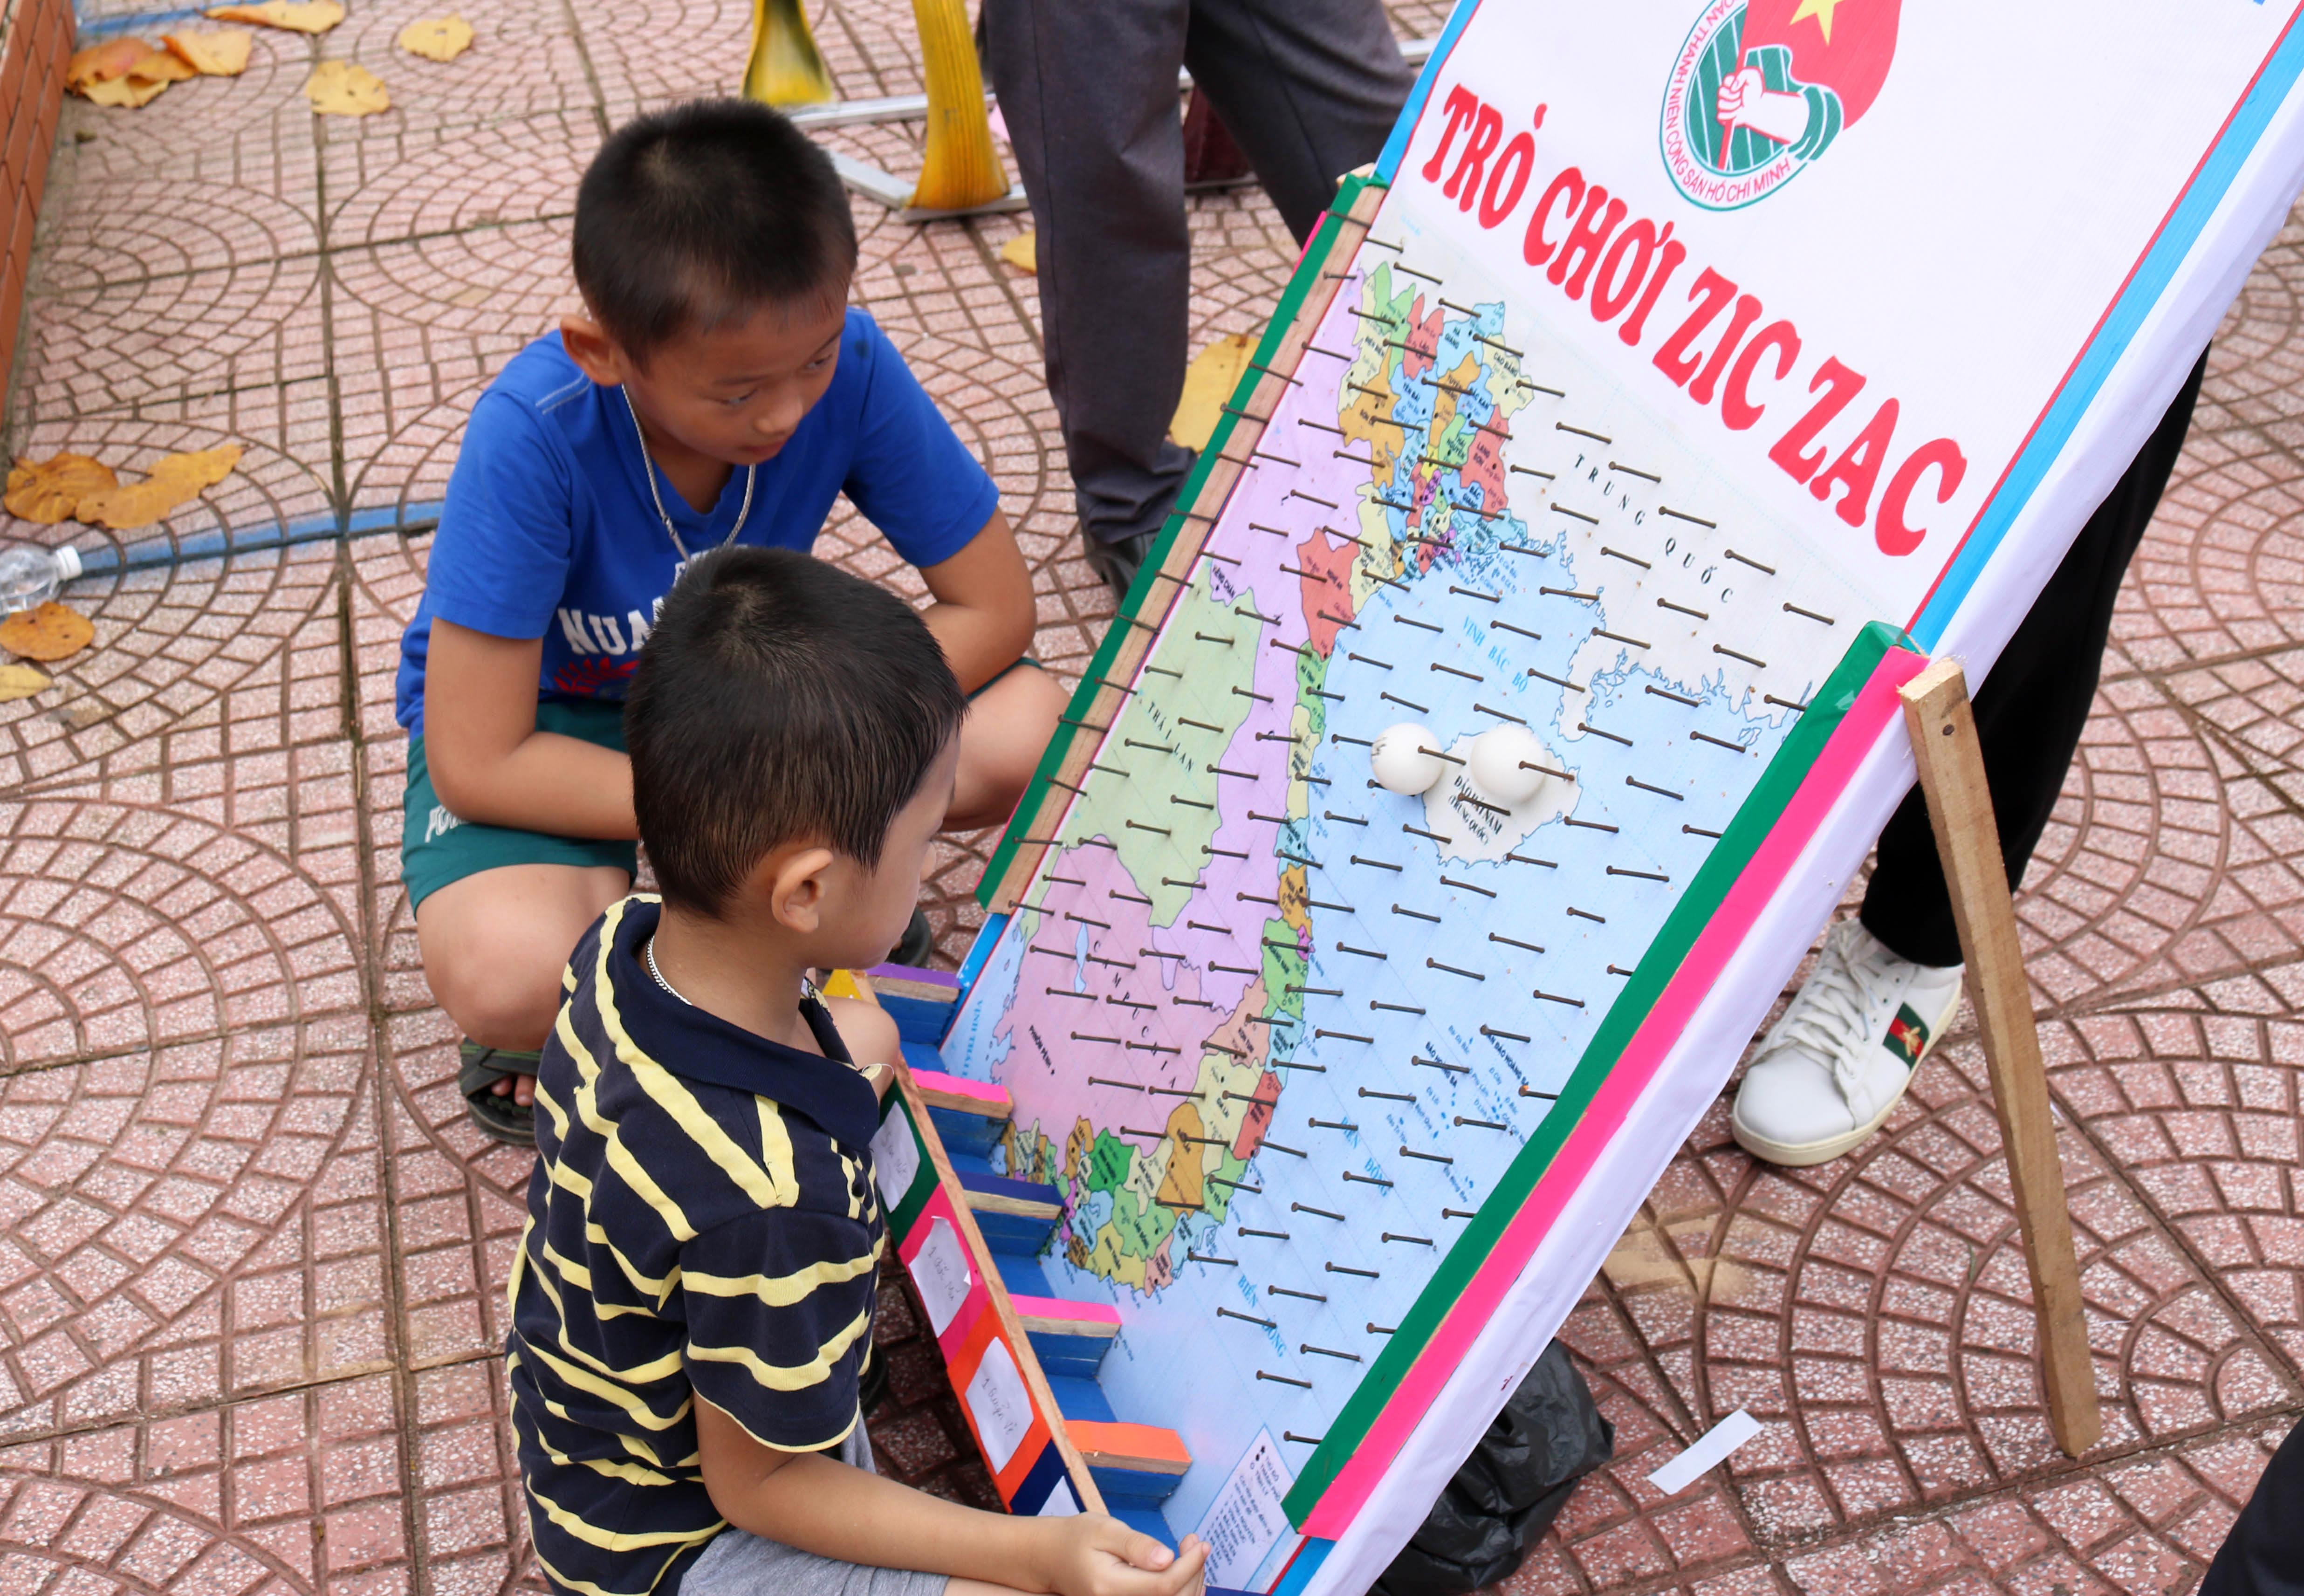 Trò chơi zích zắc trên bản đồ Việt Nam không chỉ giải trí mà còn giúp trẻ em có thêm những hiểu biết về đất nước,  biển đảo… Ảnh: Huy Thư